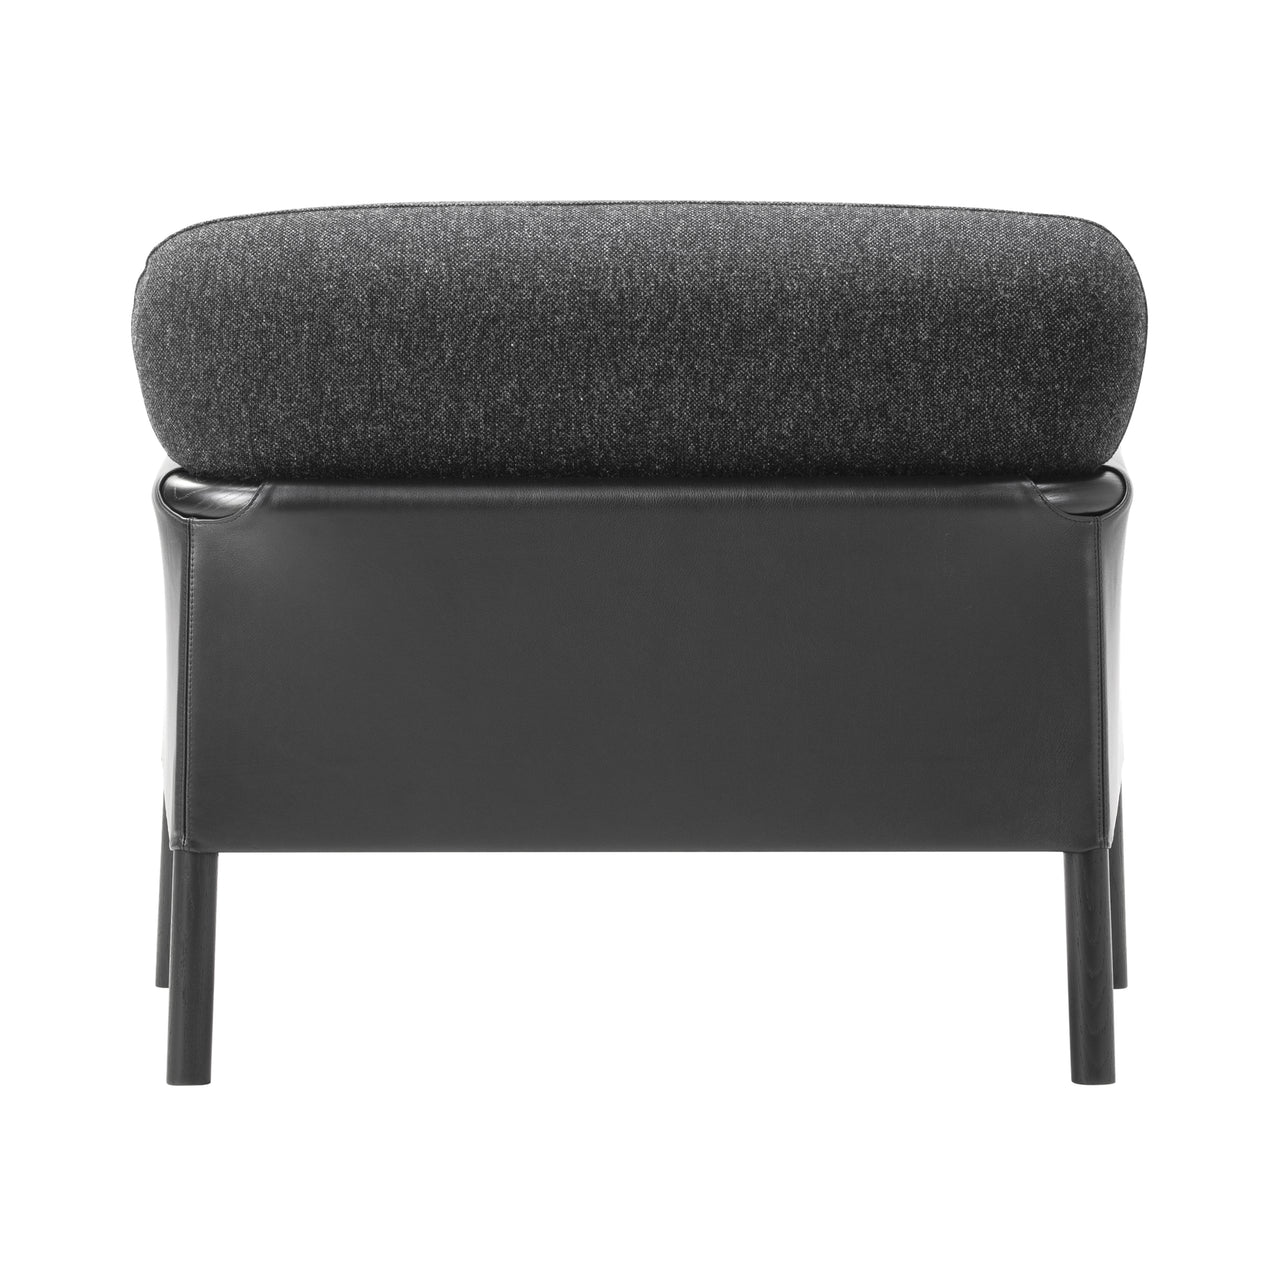 Savannah Chair: Black Lacquered Oak + Black